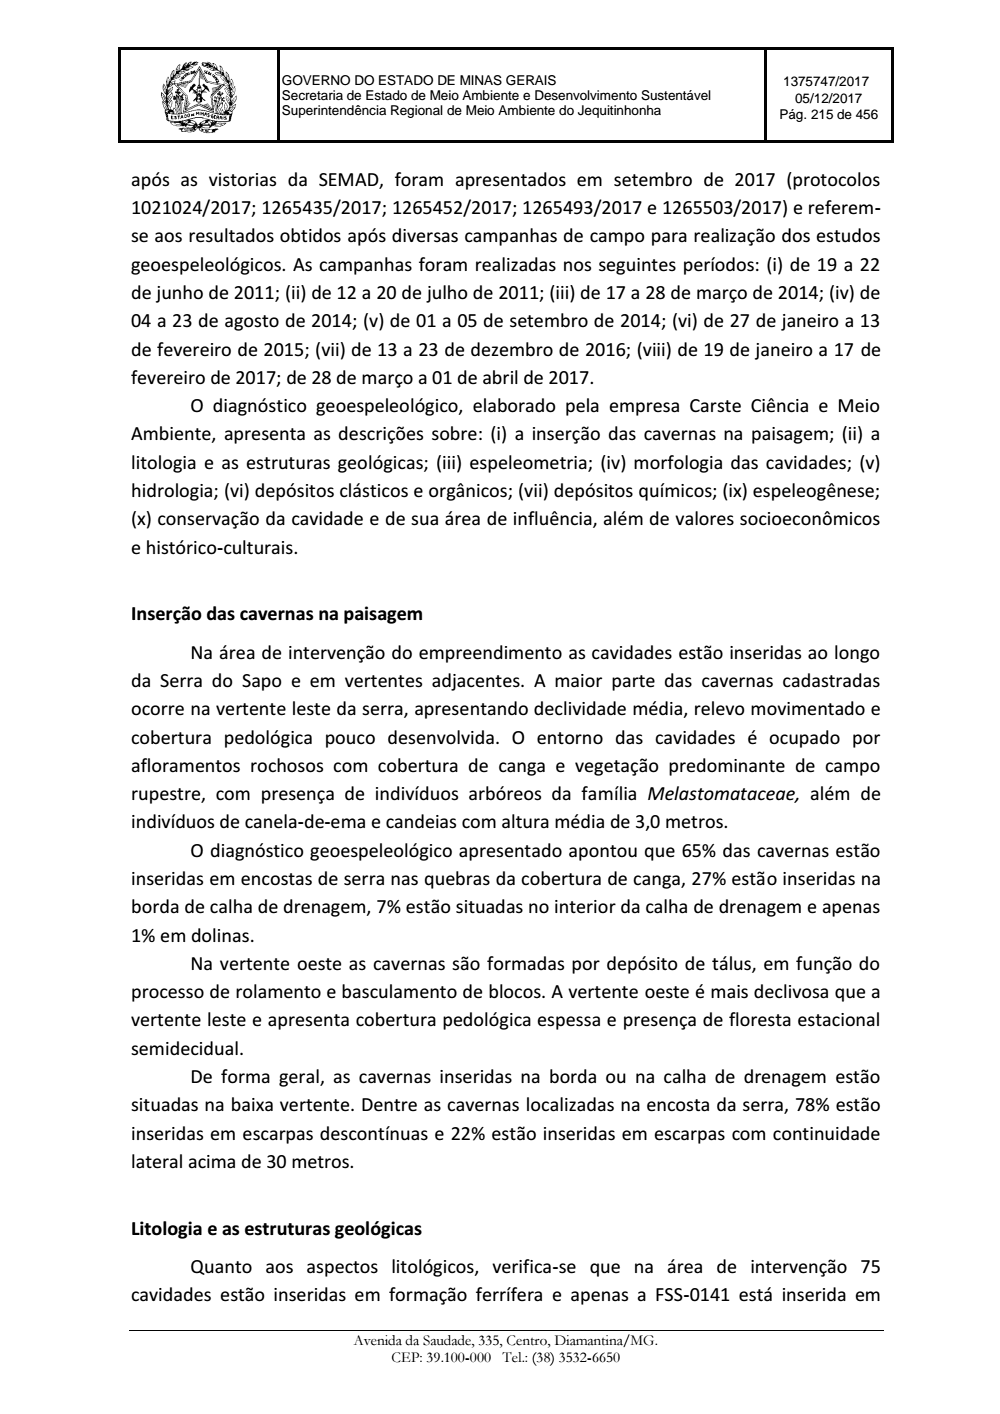 Page 215 from Parecer único da Secretaria de estado de Meio Ambiente e Desenvolvimento Sustentável (SEMAD)